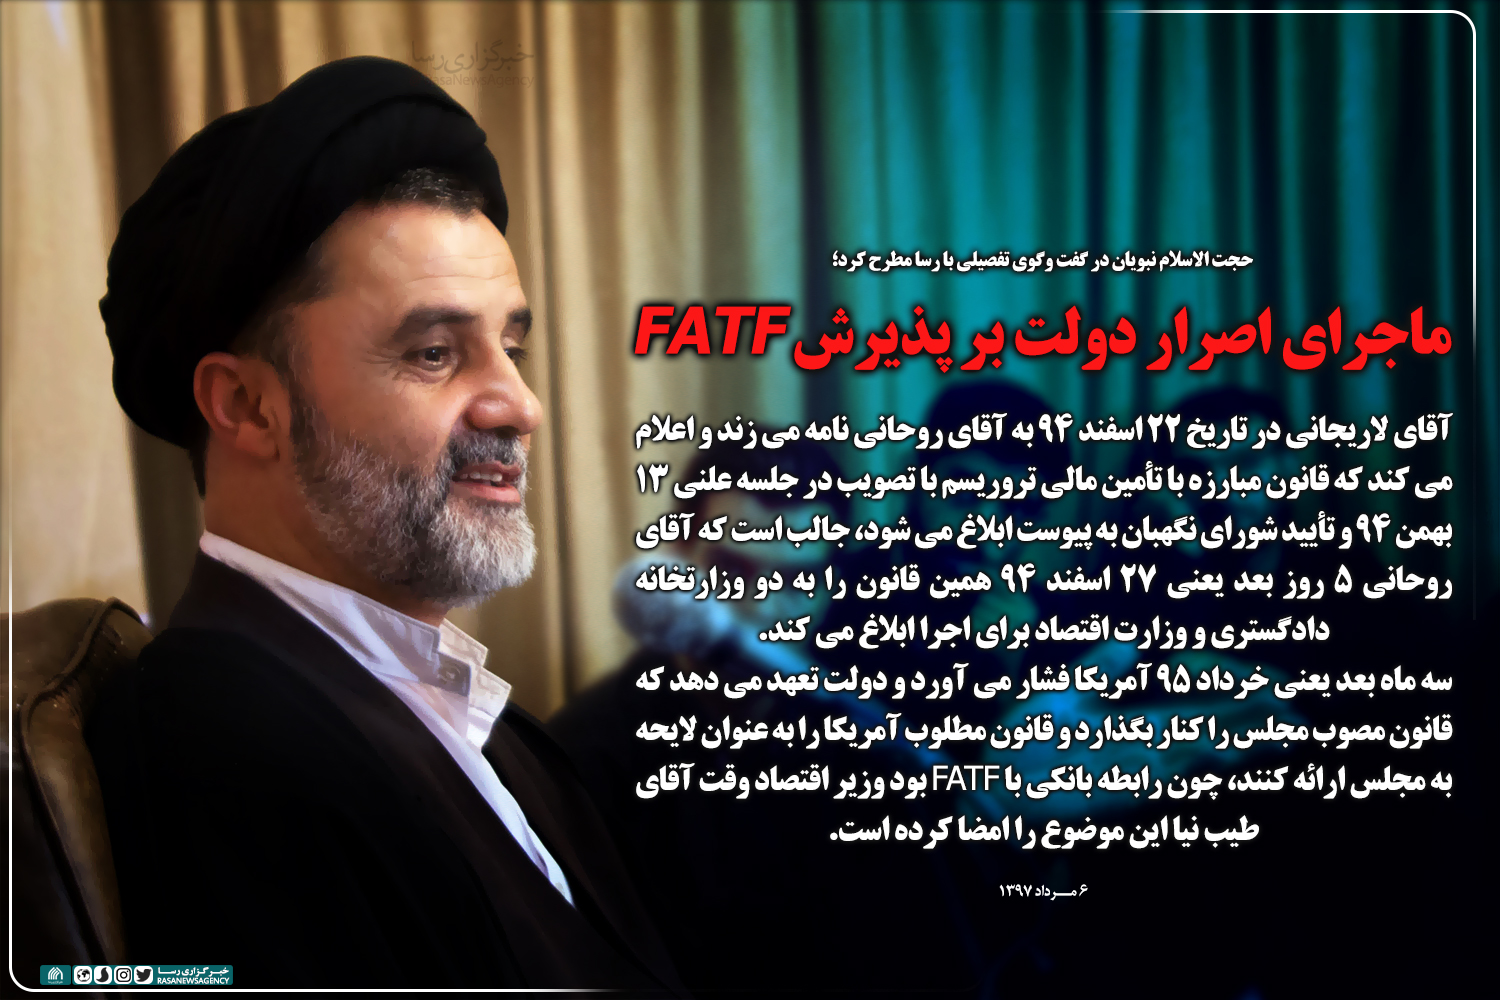 فتوتیتر| ماجرای اصرار دولت بر پذیرش FATF